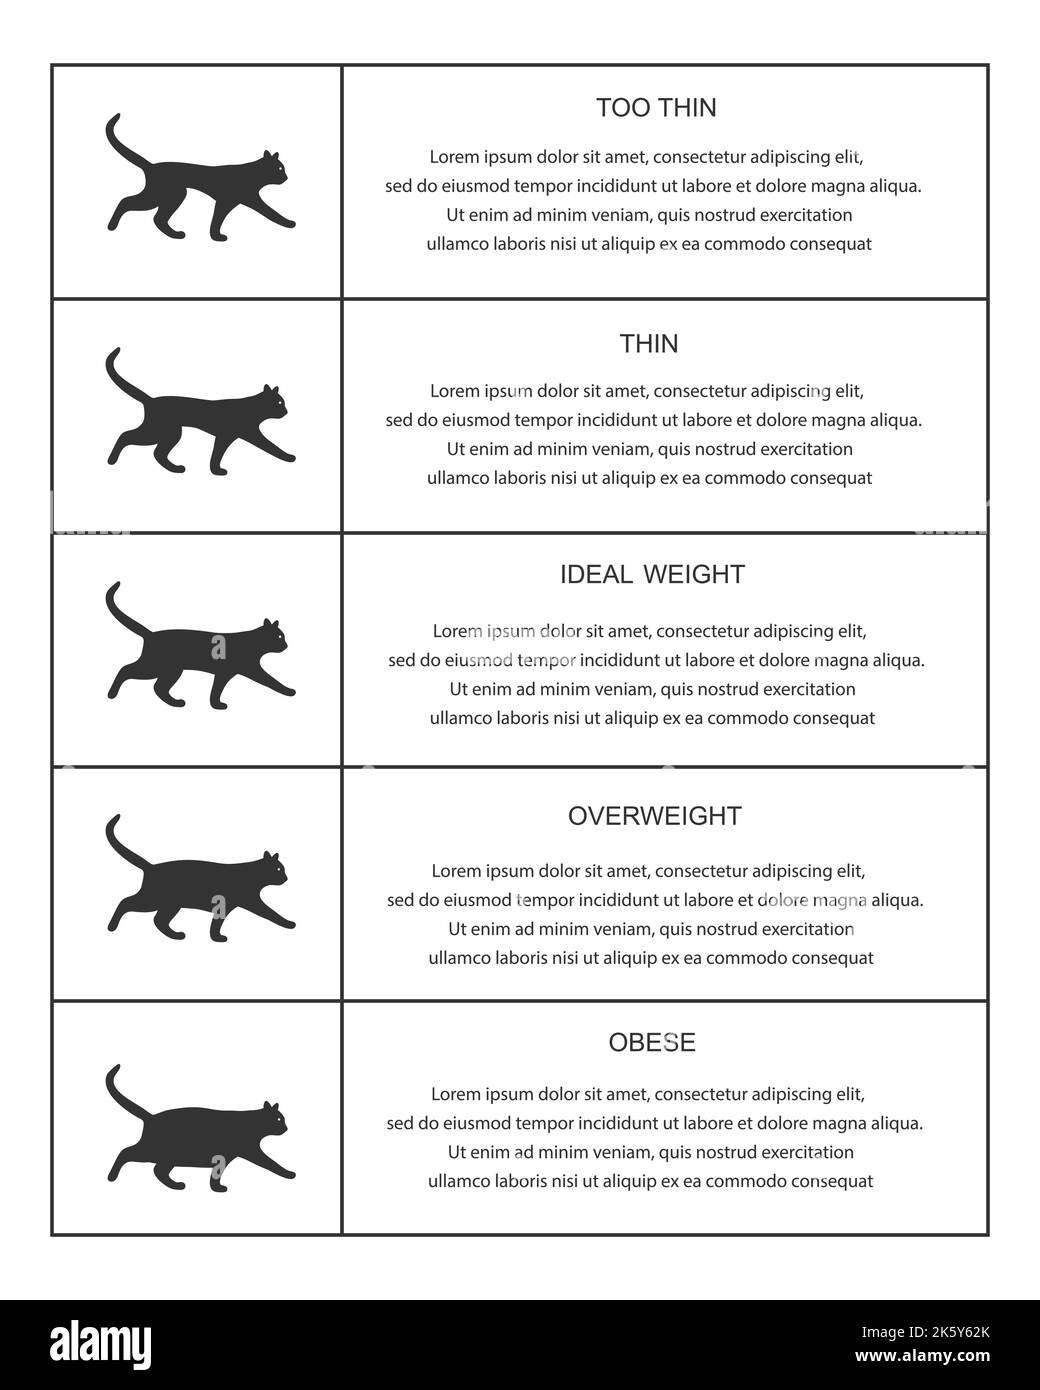 Tabella dei pesi dei gatti nella tabella infografica. Silhouette di gattini con condizioni normali e anormali del corpo. Piccoli animali domestici felini sottili, ideali, sovrappeso e obesi. Illustrazione grafica vettoriale Illustrazione Vettoriale